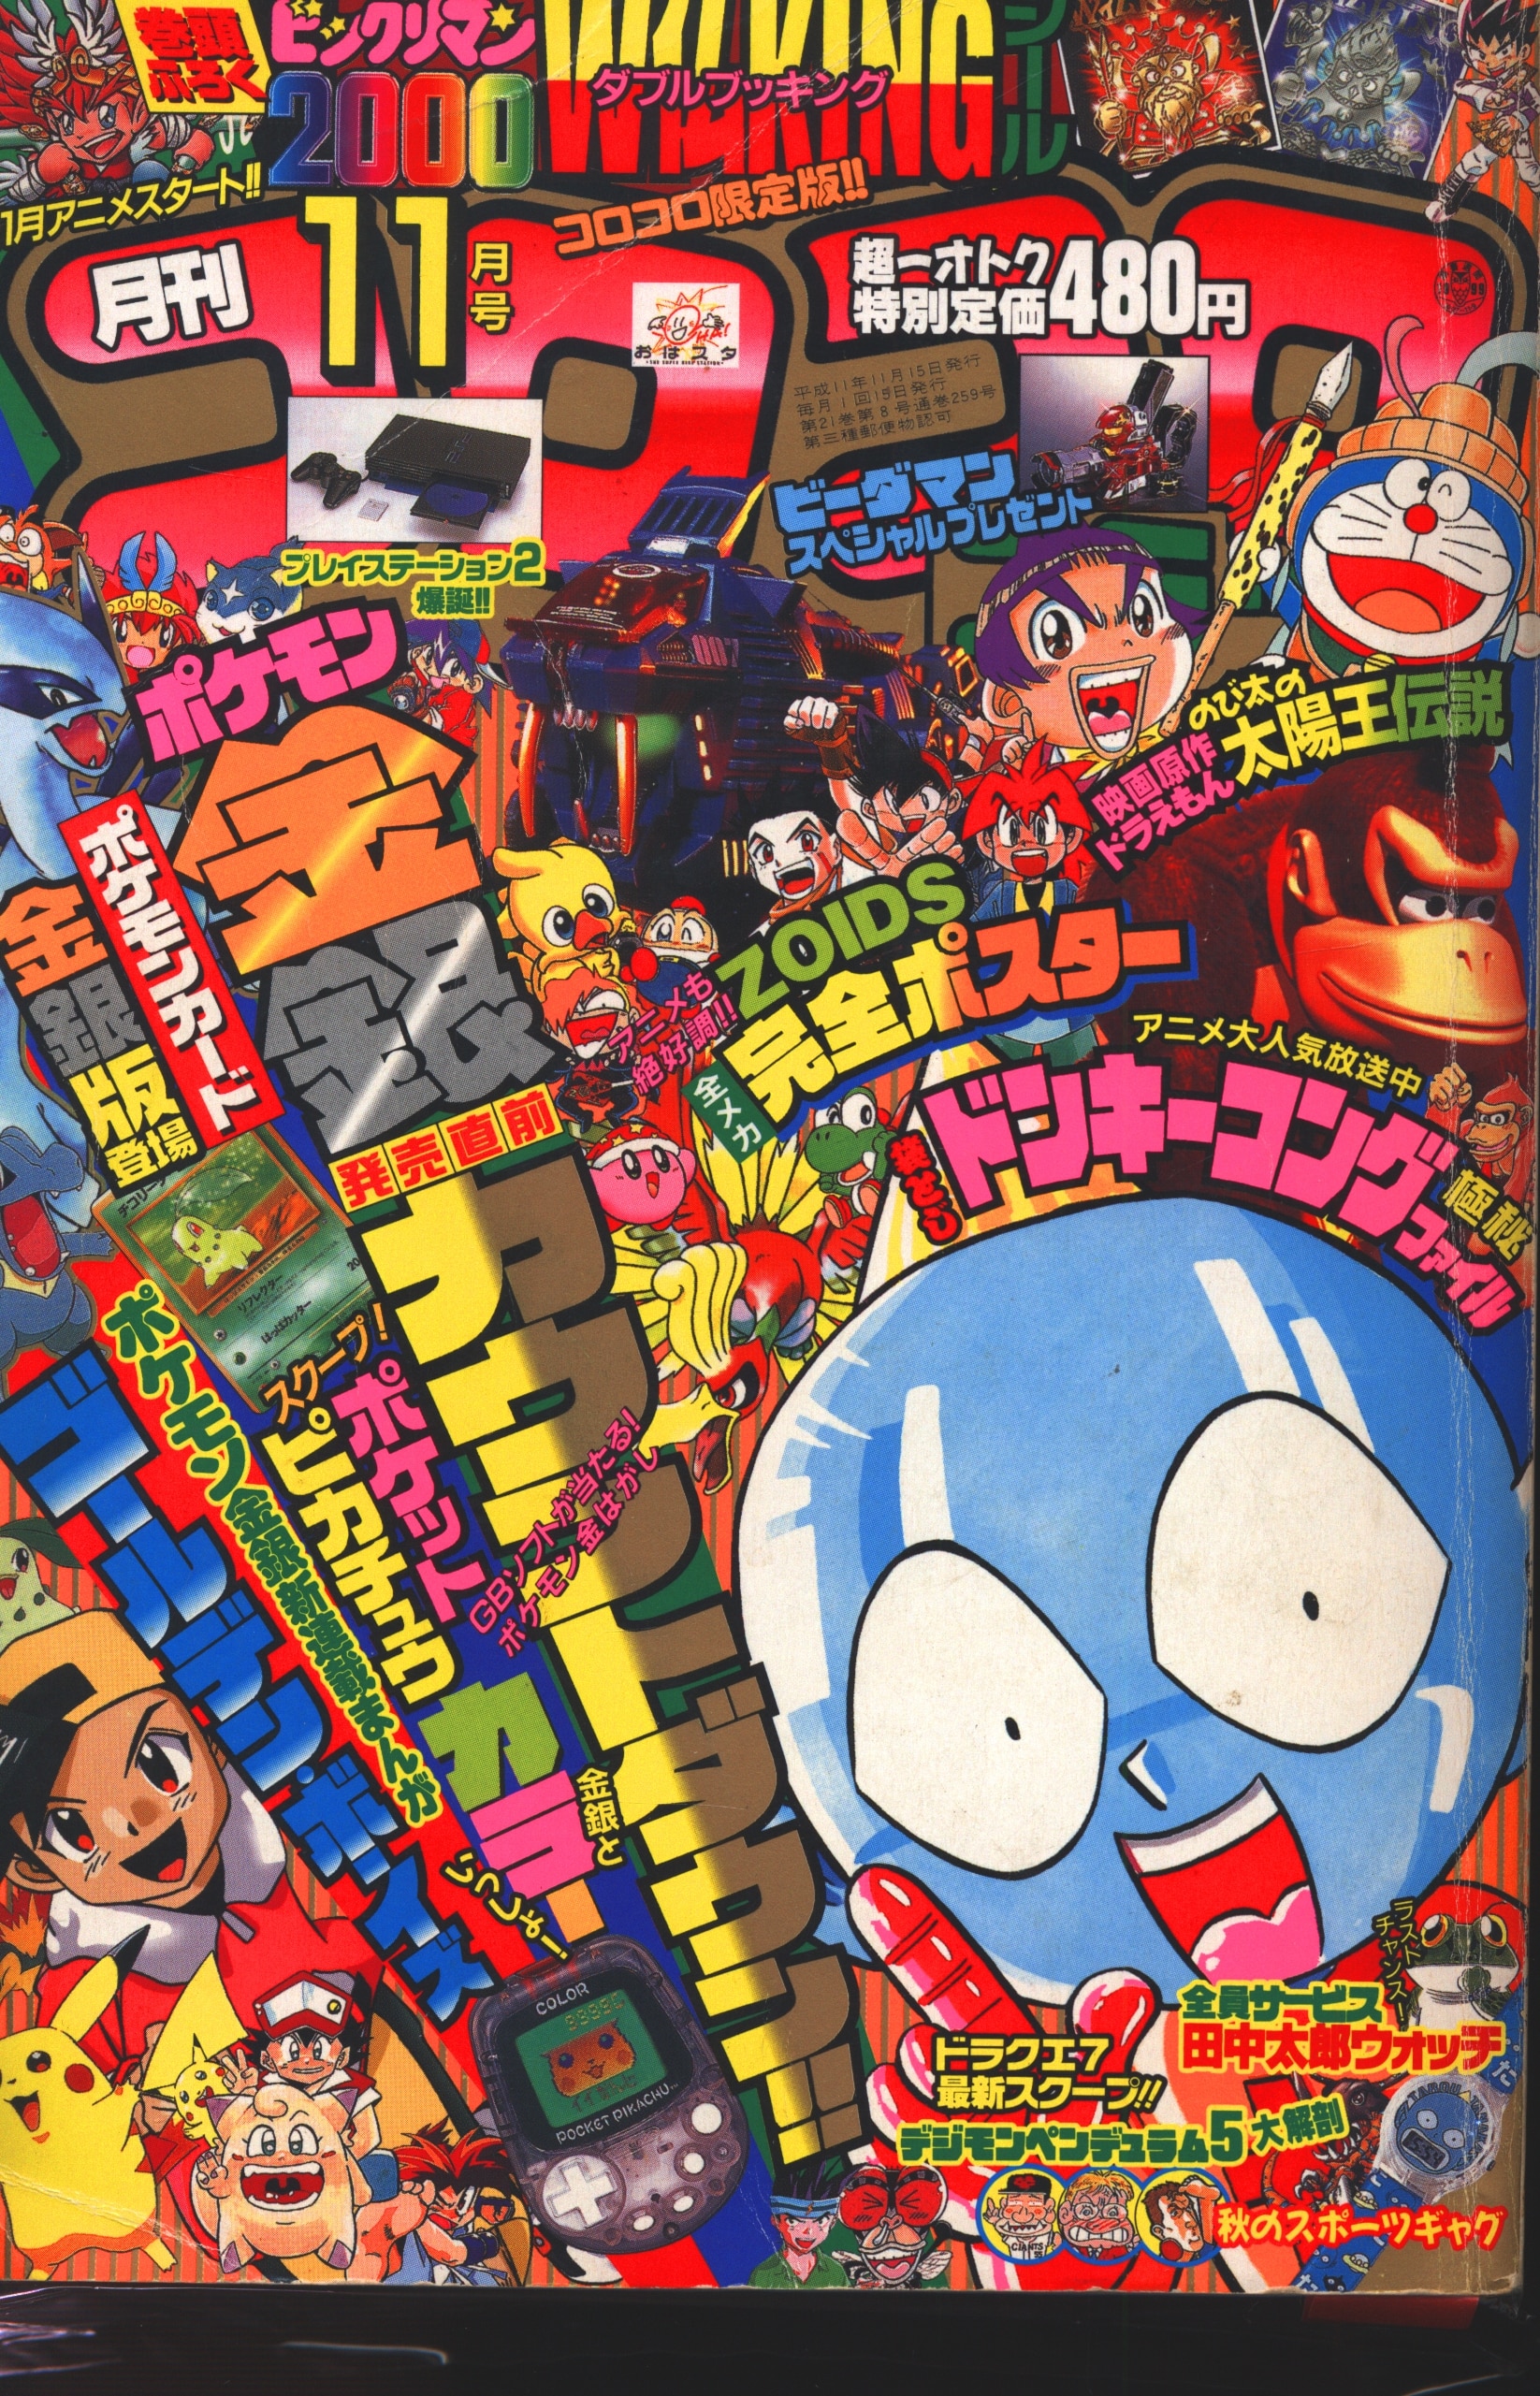 小学館 1999年 平成11年 の漫画雑誌 コロコロコミック 1999年 平成11年 11 月号 259 まんだらけ Mandarake